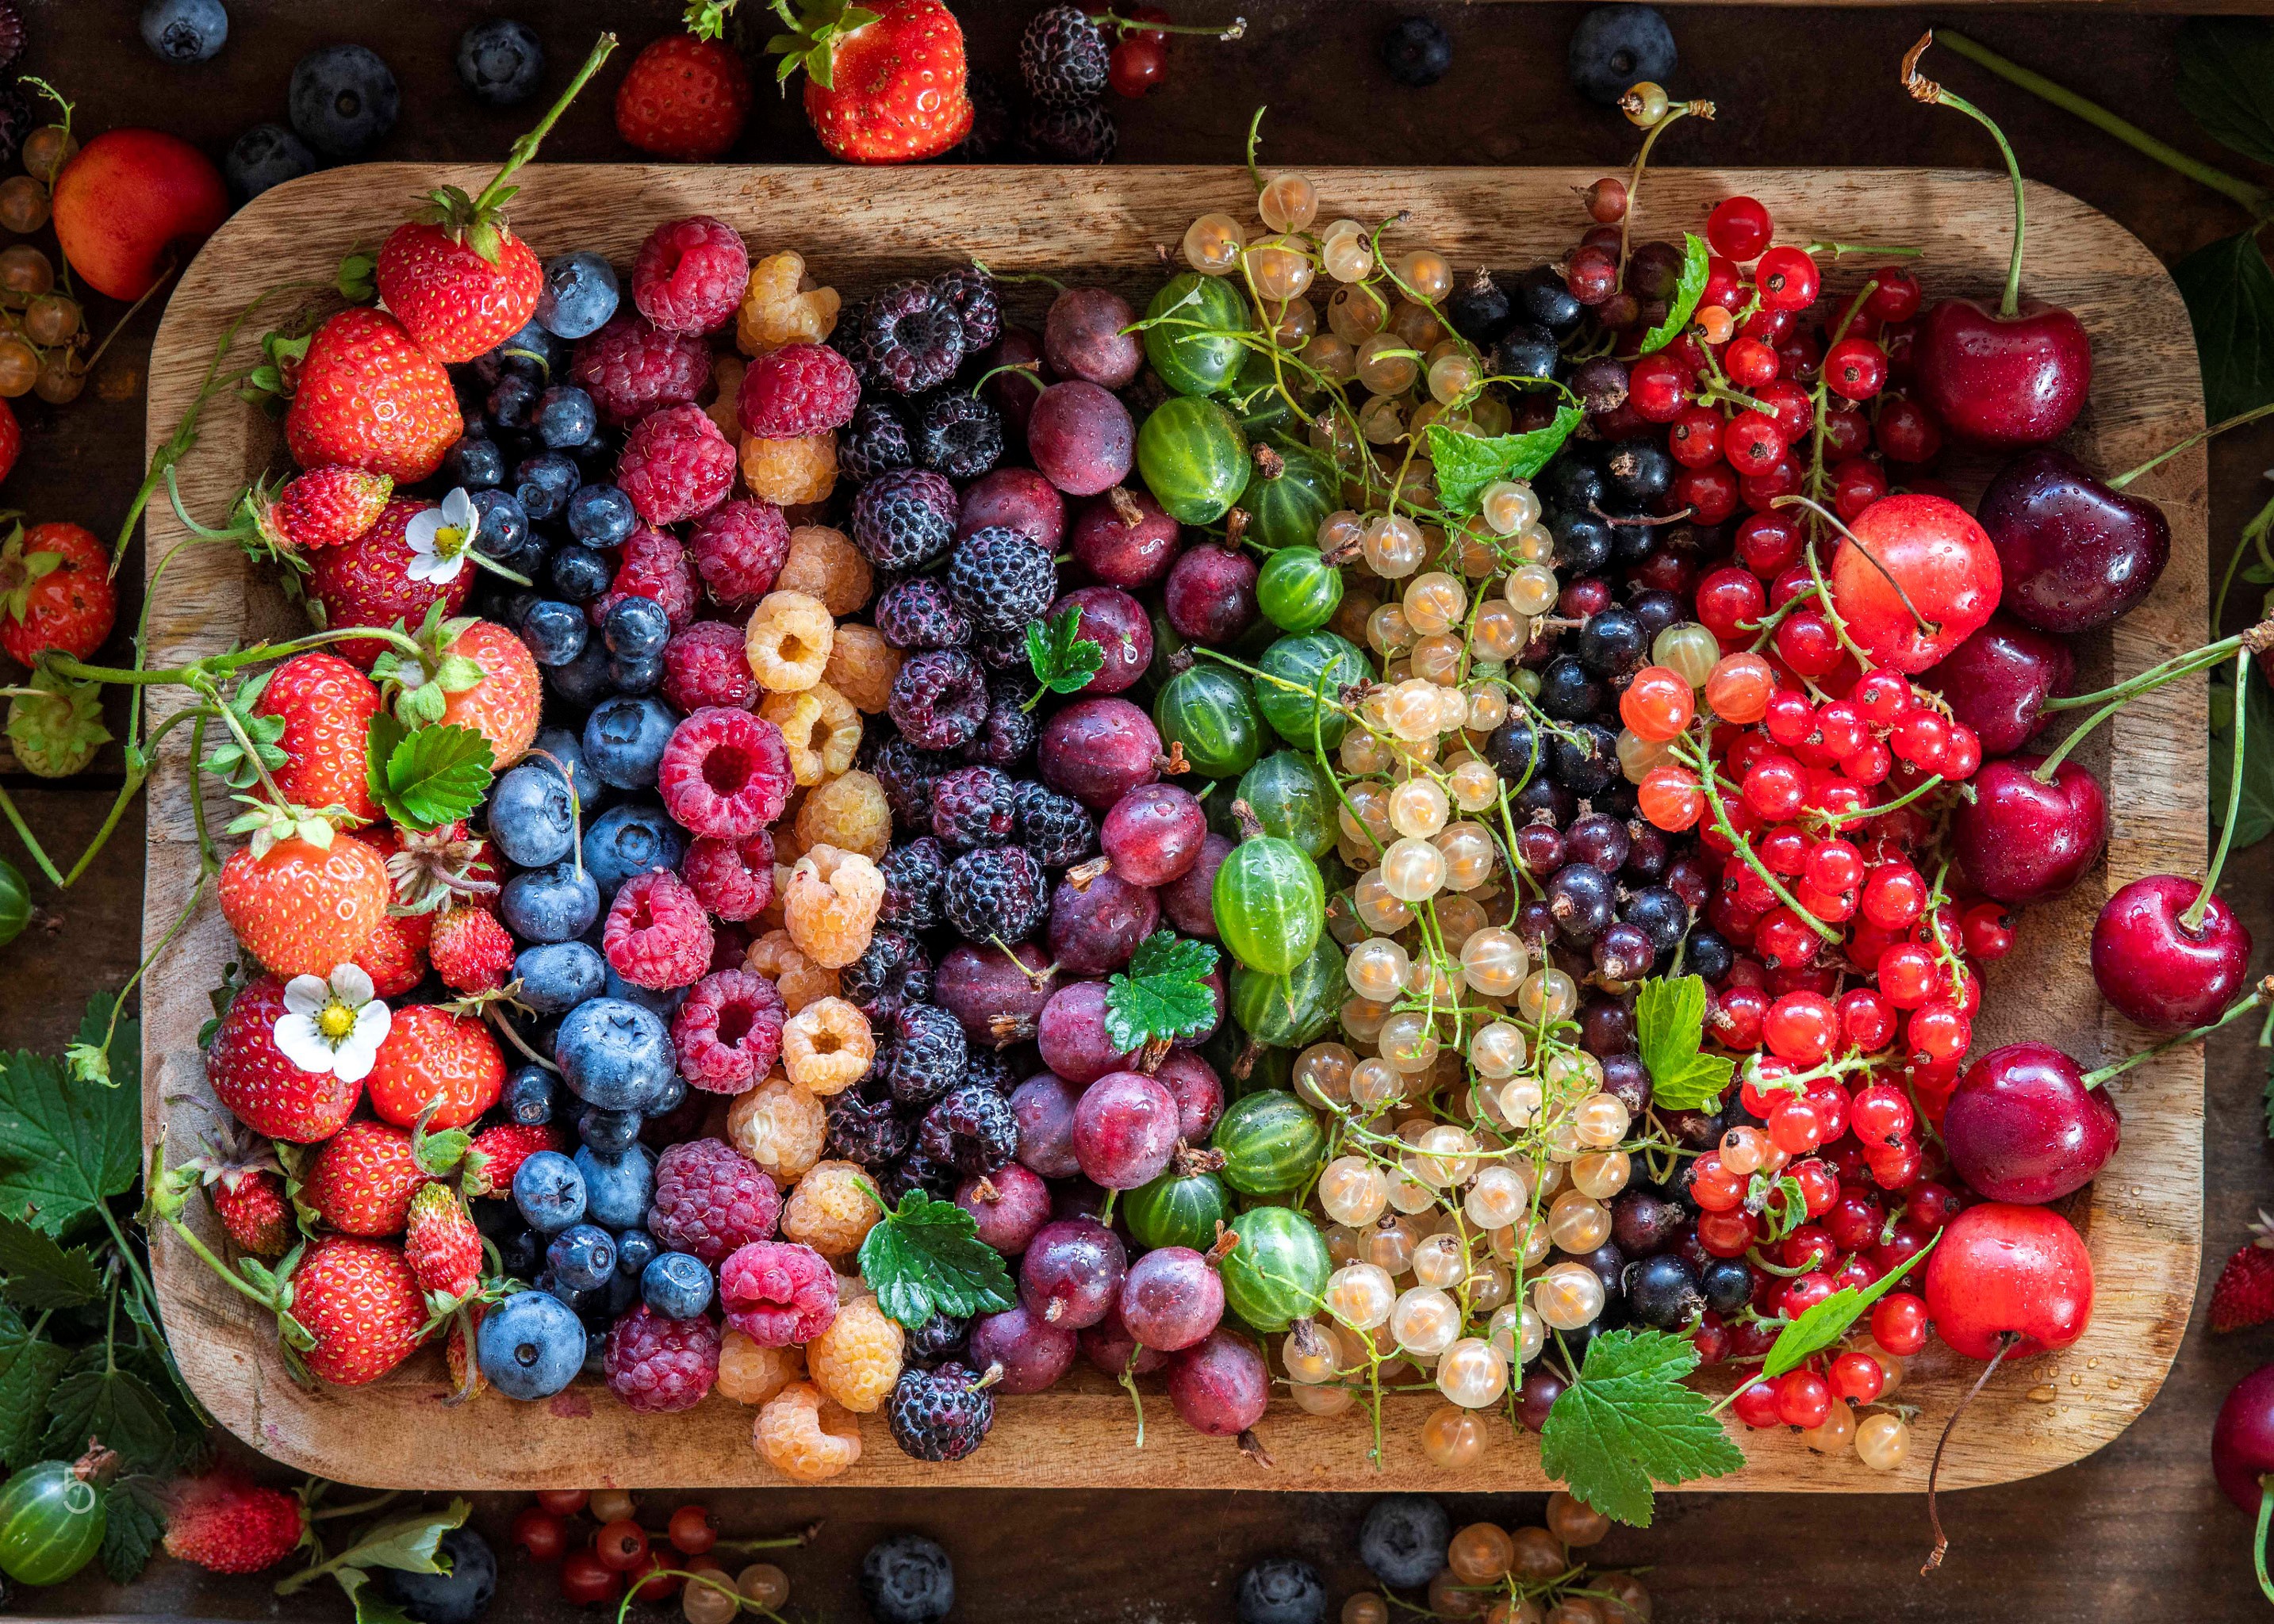 Colorful Food Fruit Berries Strawberries Blueberries Raspberries Grapes Red Currant Cherries Wooden  2867x2048